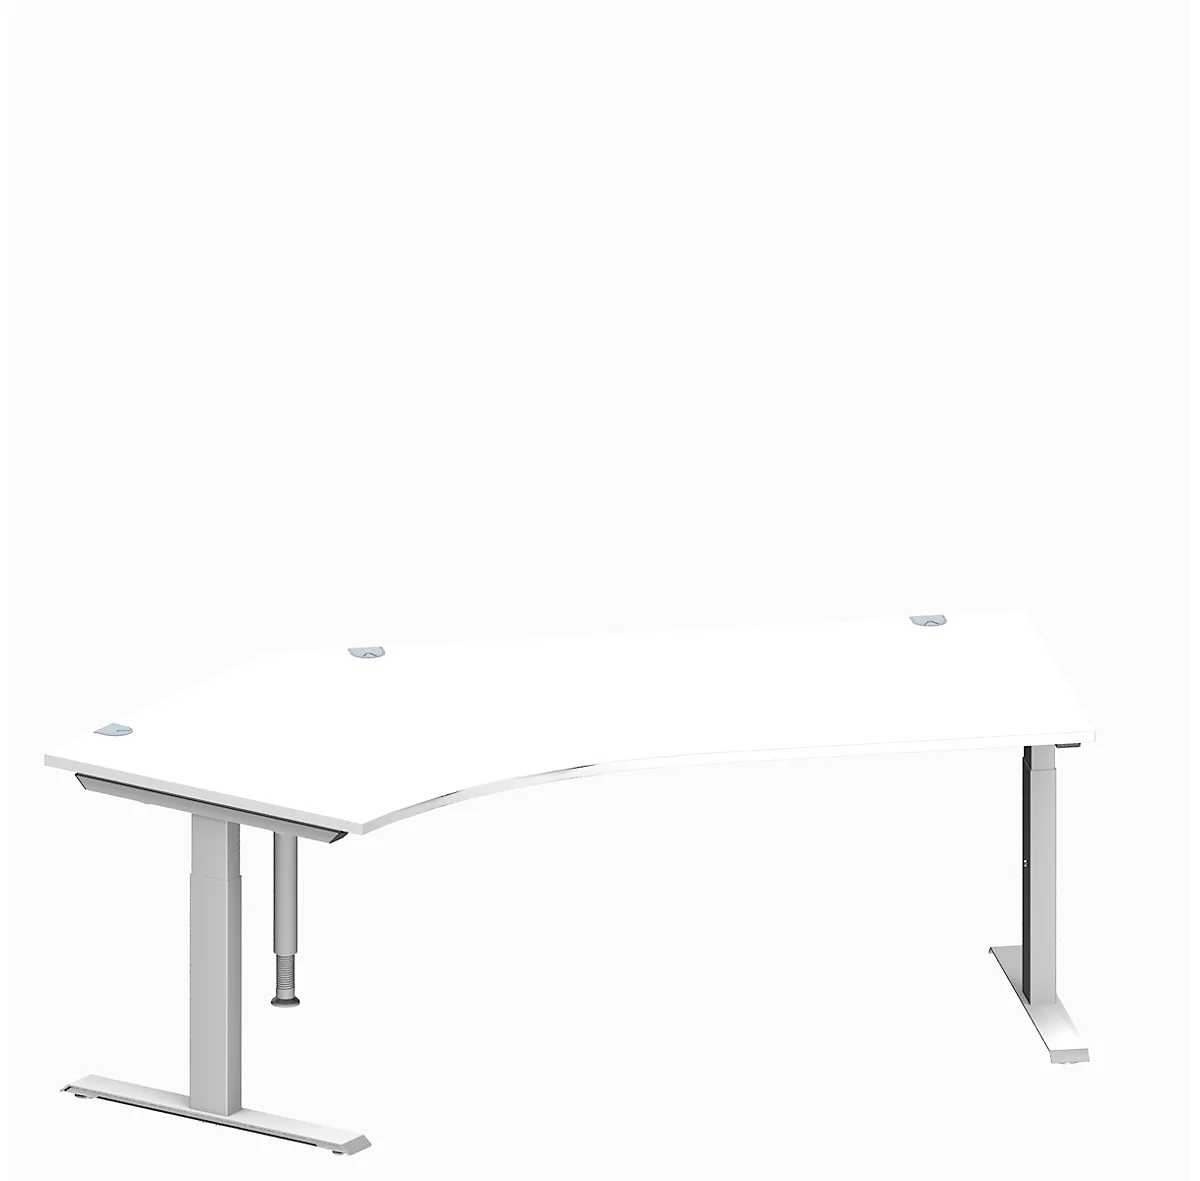 Schäfer Shop Genius escritorio angular MODENA FLEX, ángulo de 135° a la izquierda, tubo rectangular con pie en T, An 2165 x Pr 800/800 x Al 650-850 mm, alu blanco/blanco